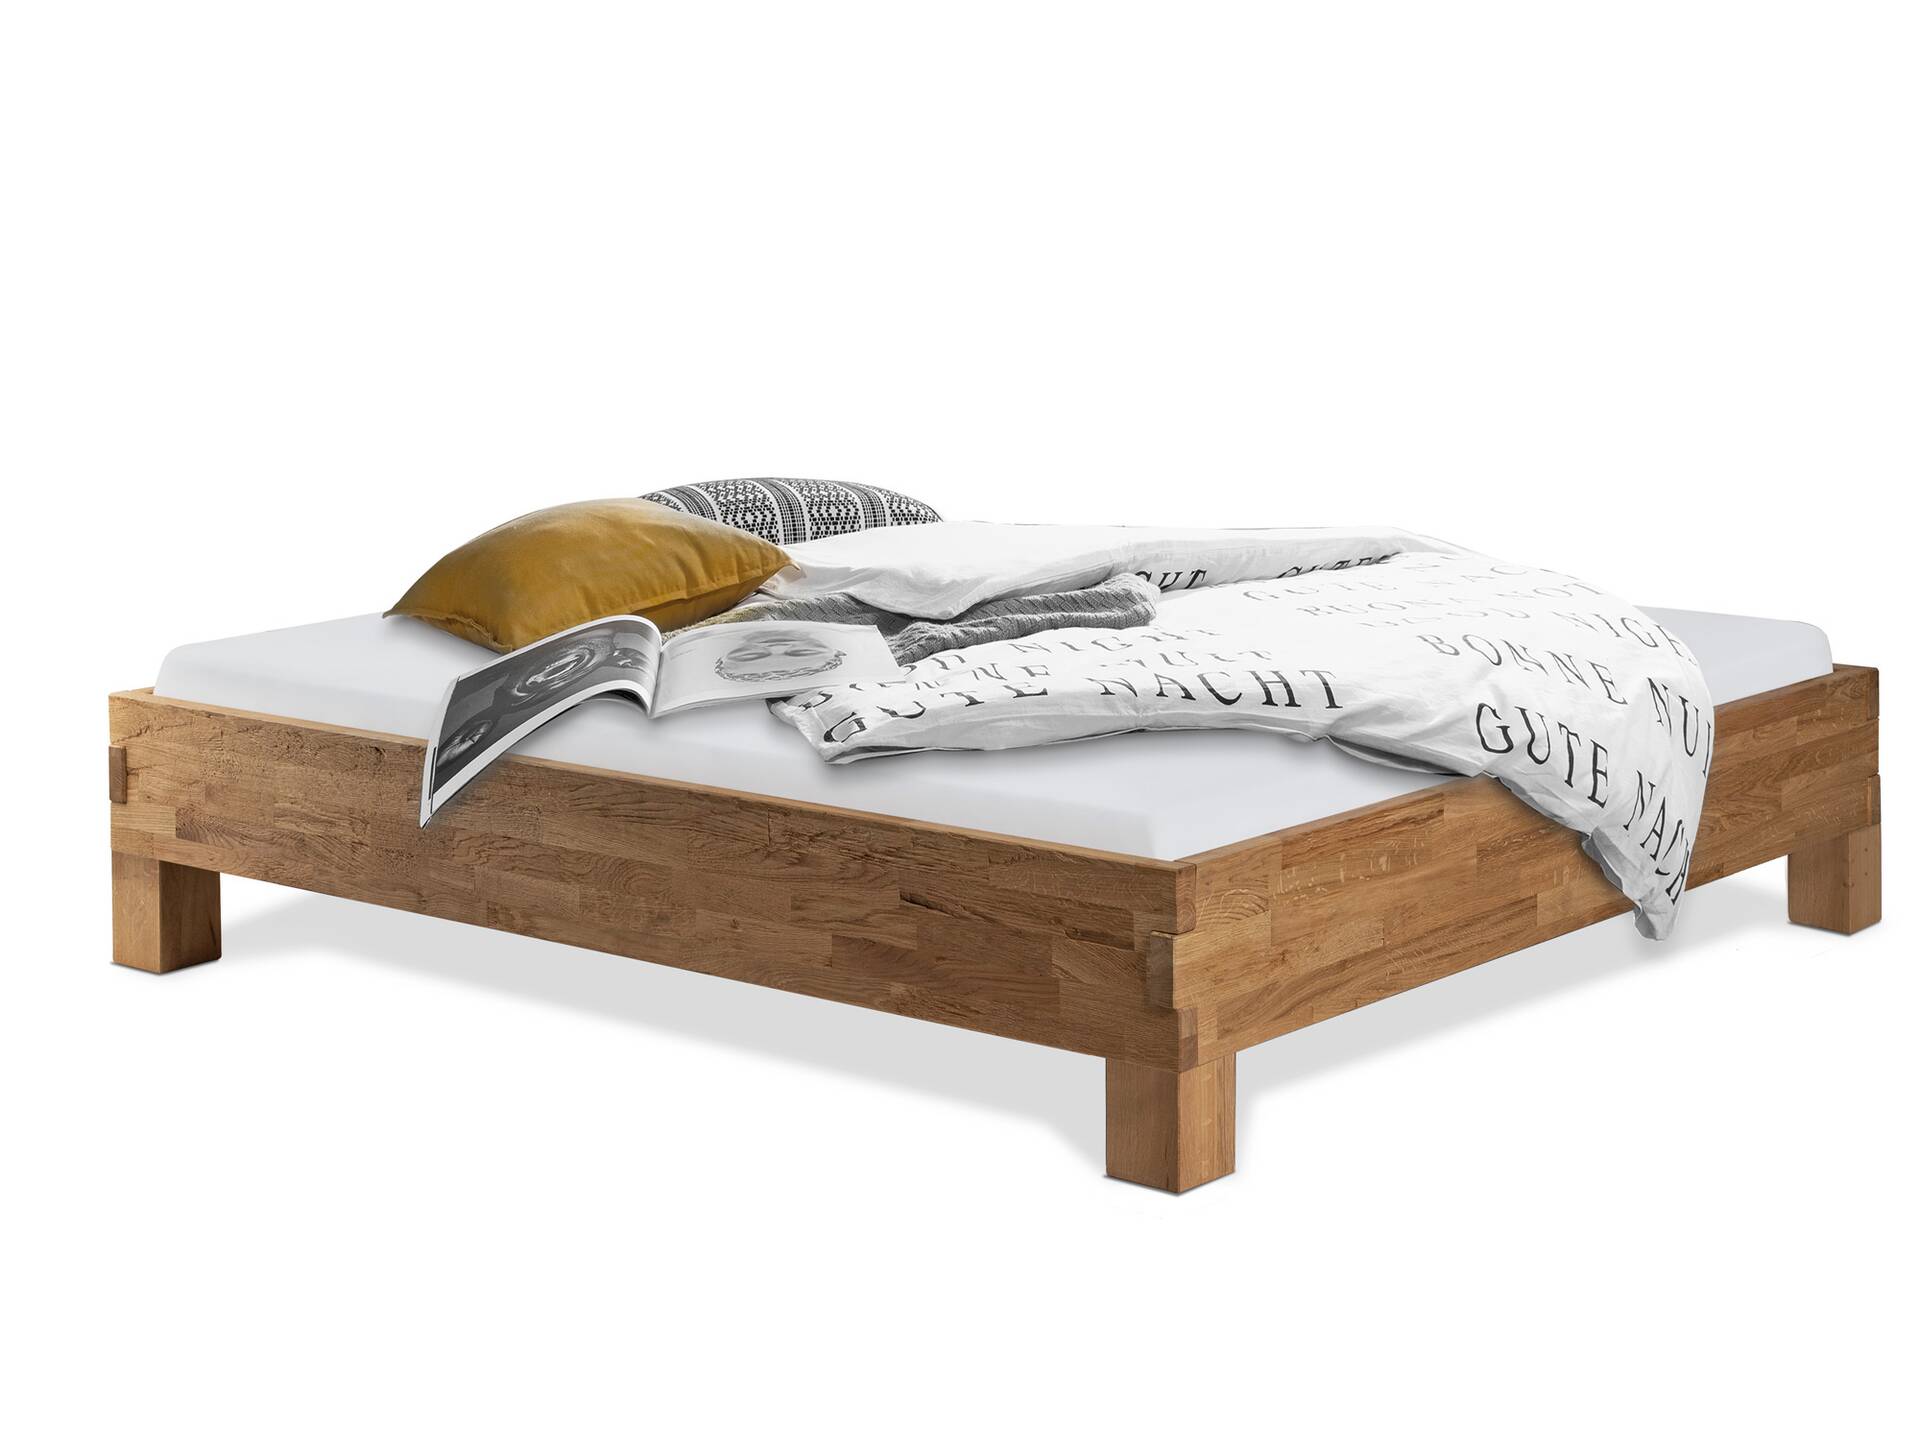 CORDINO 4-Fuß-Bett aus Eiche, Material Massivholz, mit/ohne Kopfteil 180 x 220 cm | Eiche lackiert | gehackt | ohne Kopfteil